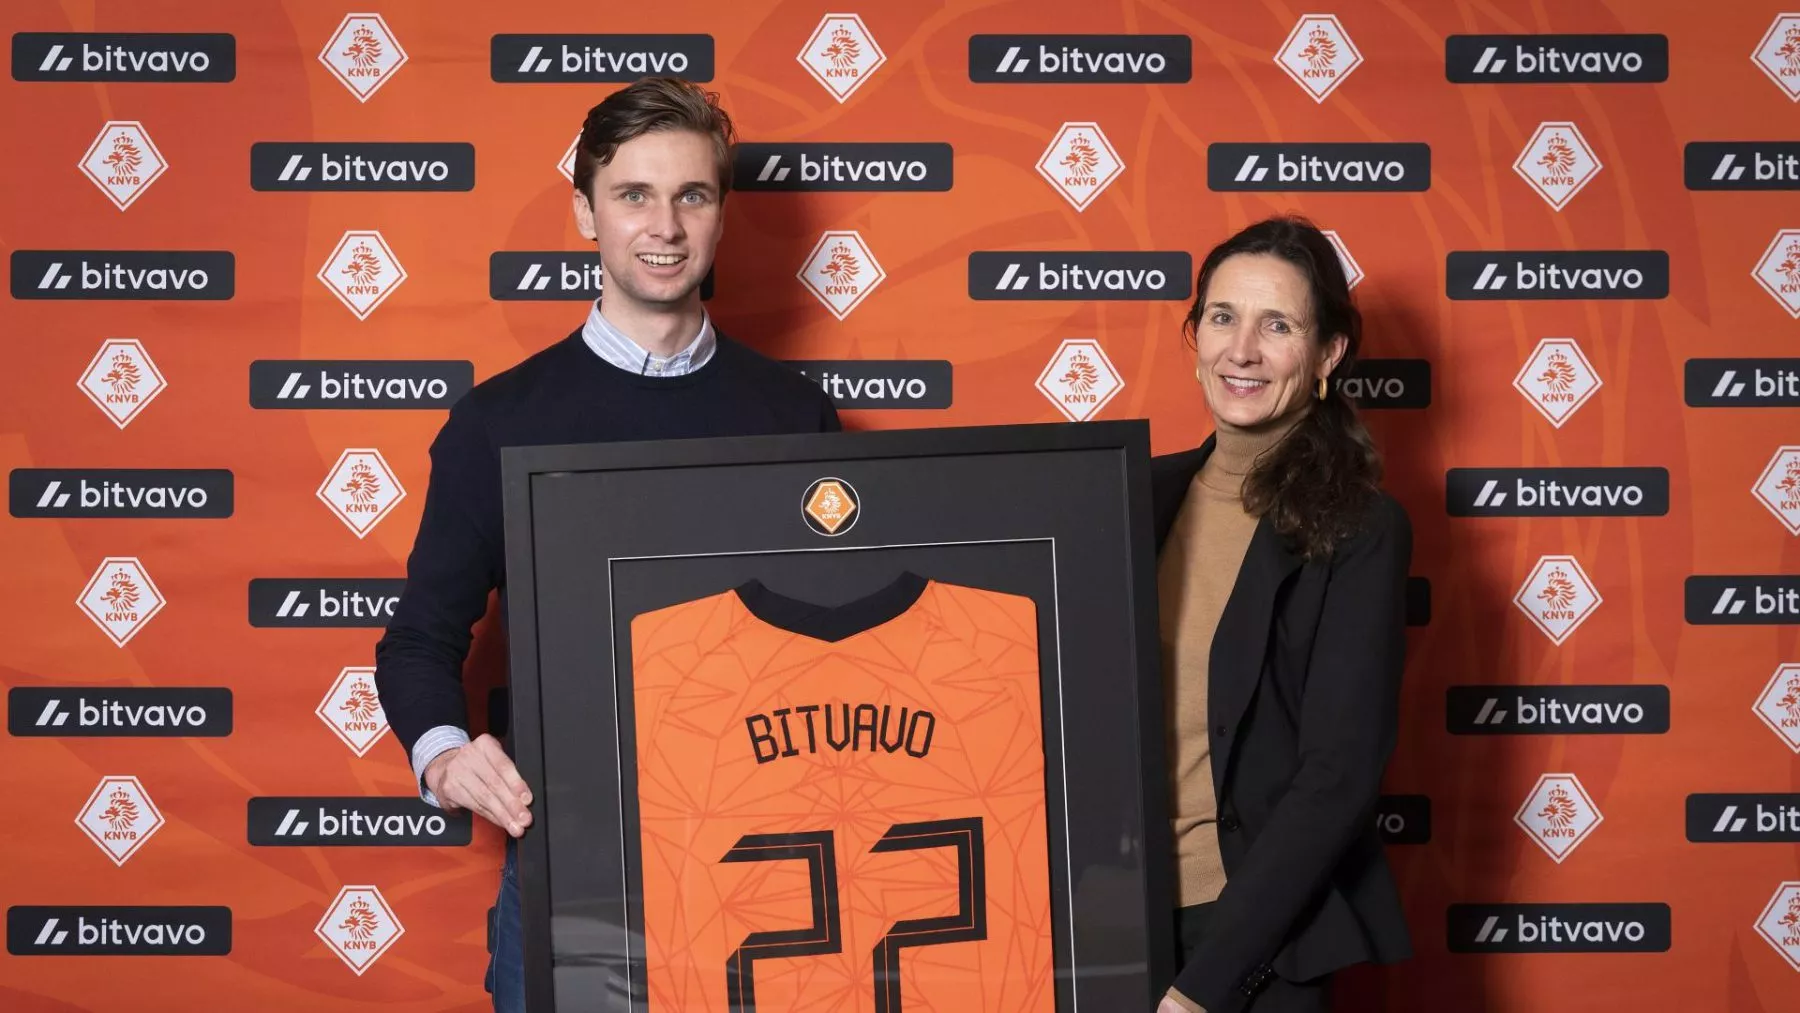 Bitvavo is de officiële crypto partner van de KNVB